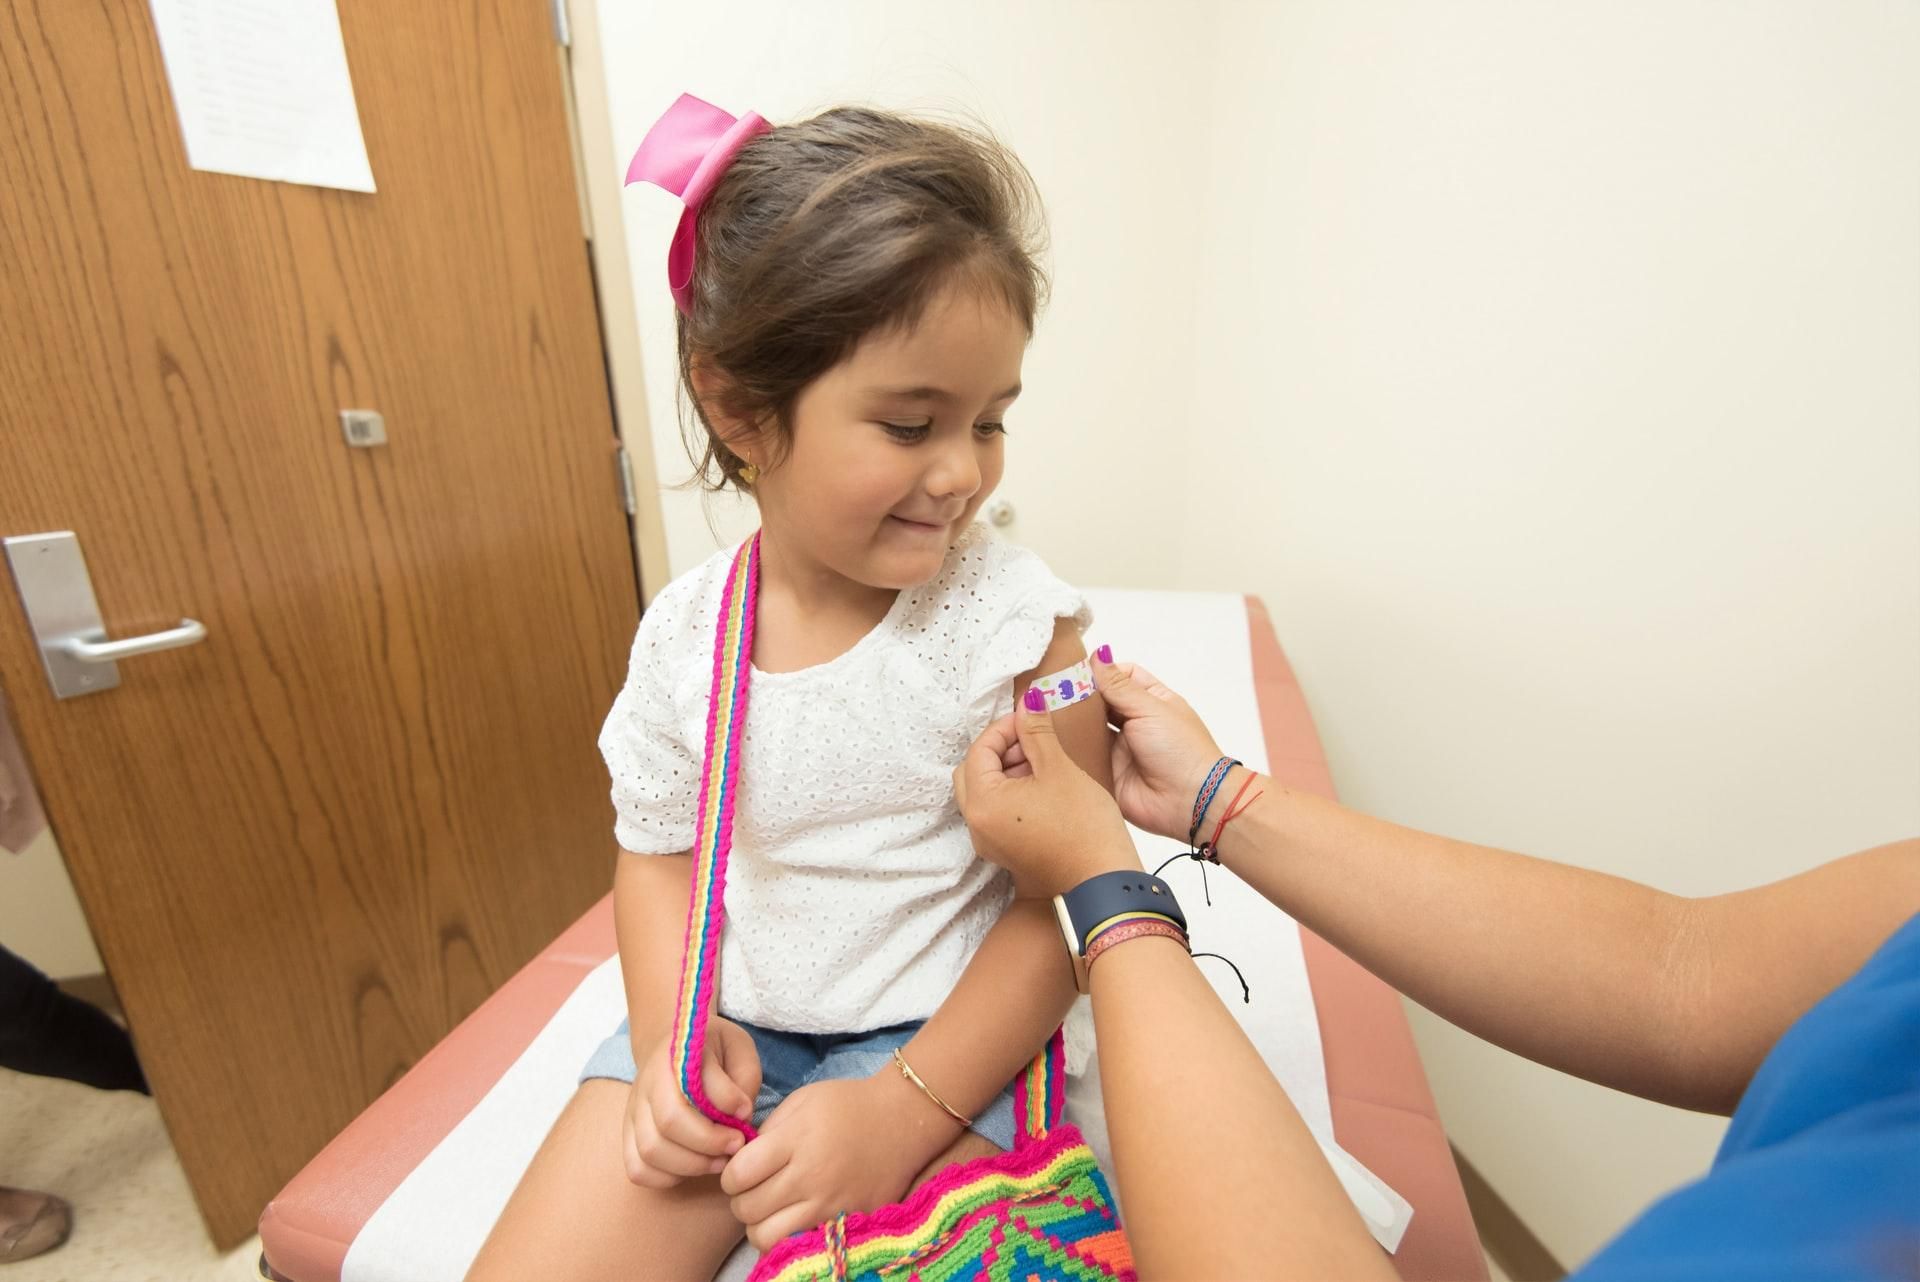 Побочные реакции после вакцинации не влияют на развитие ребенка: исследование